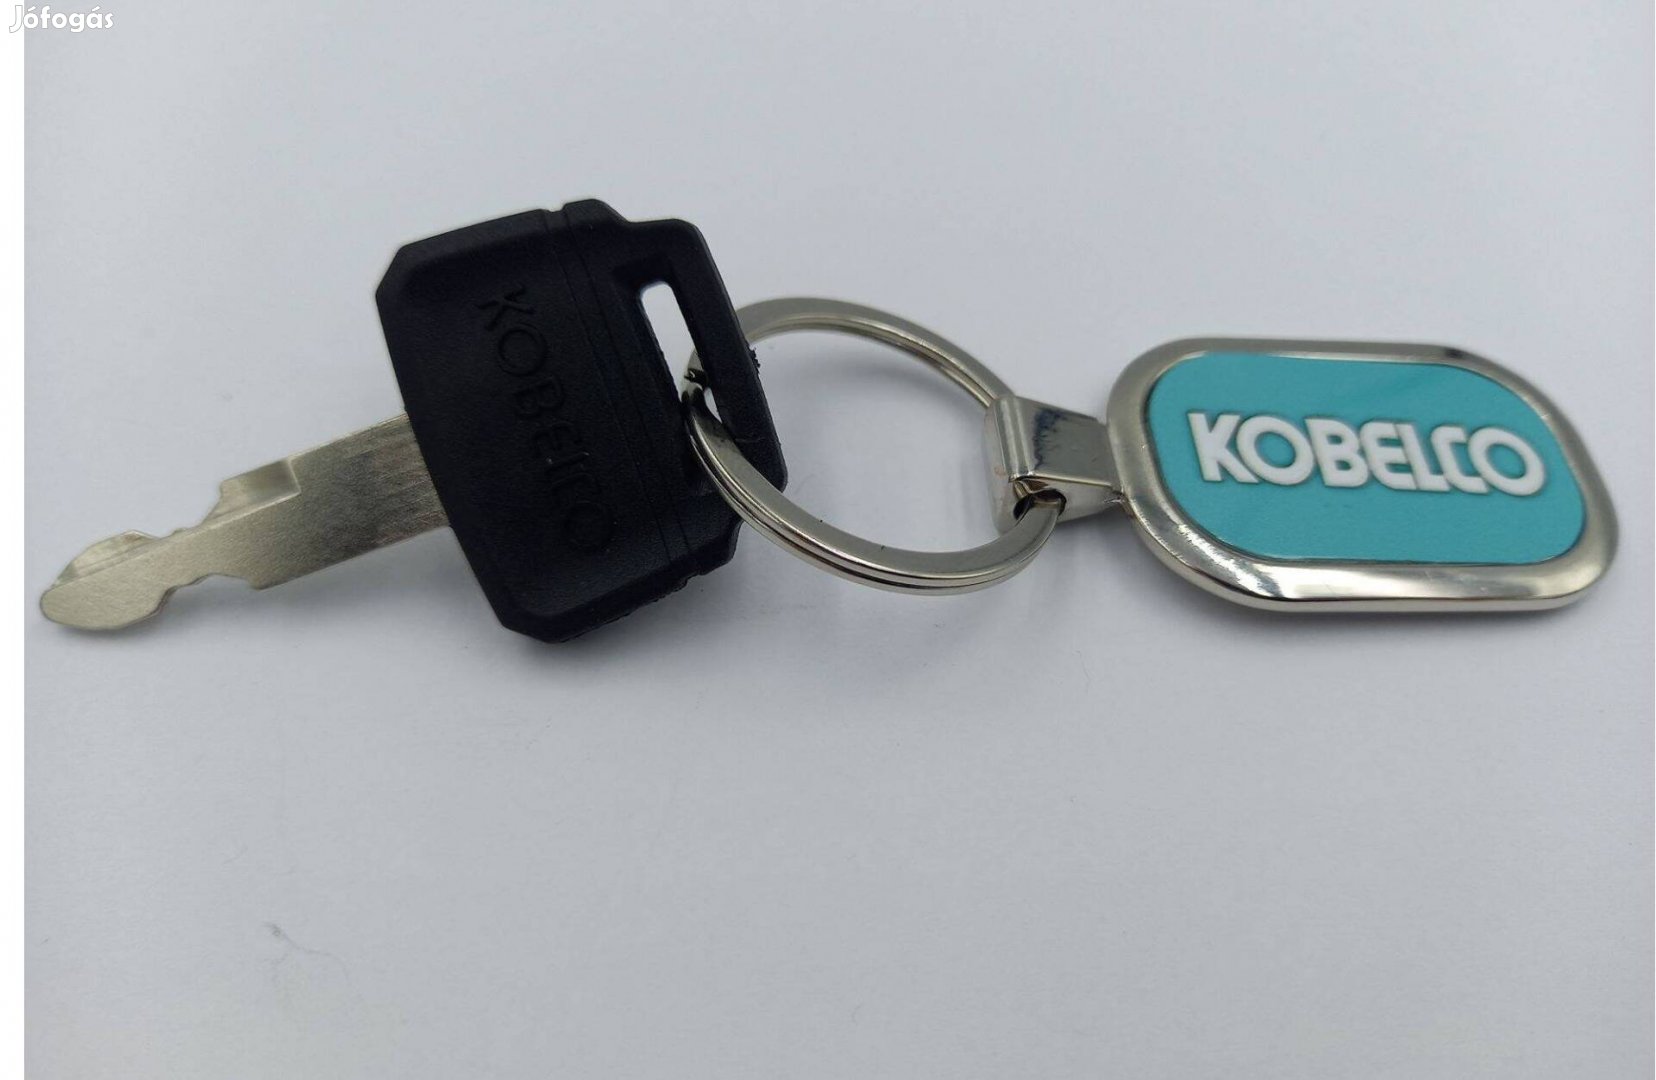 Kobelco munkagép kulcs (műanyag Kobelco felirattal fej rész illetve fu